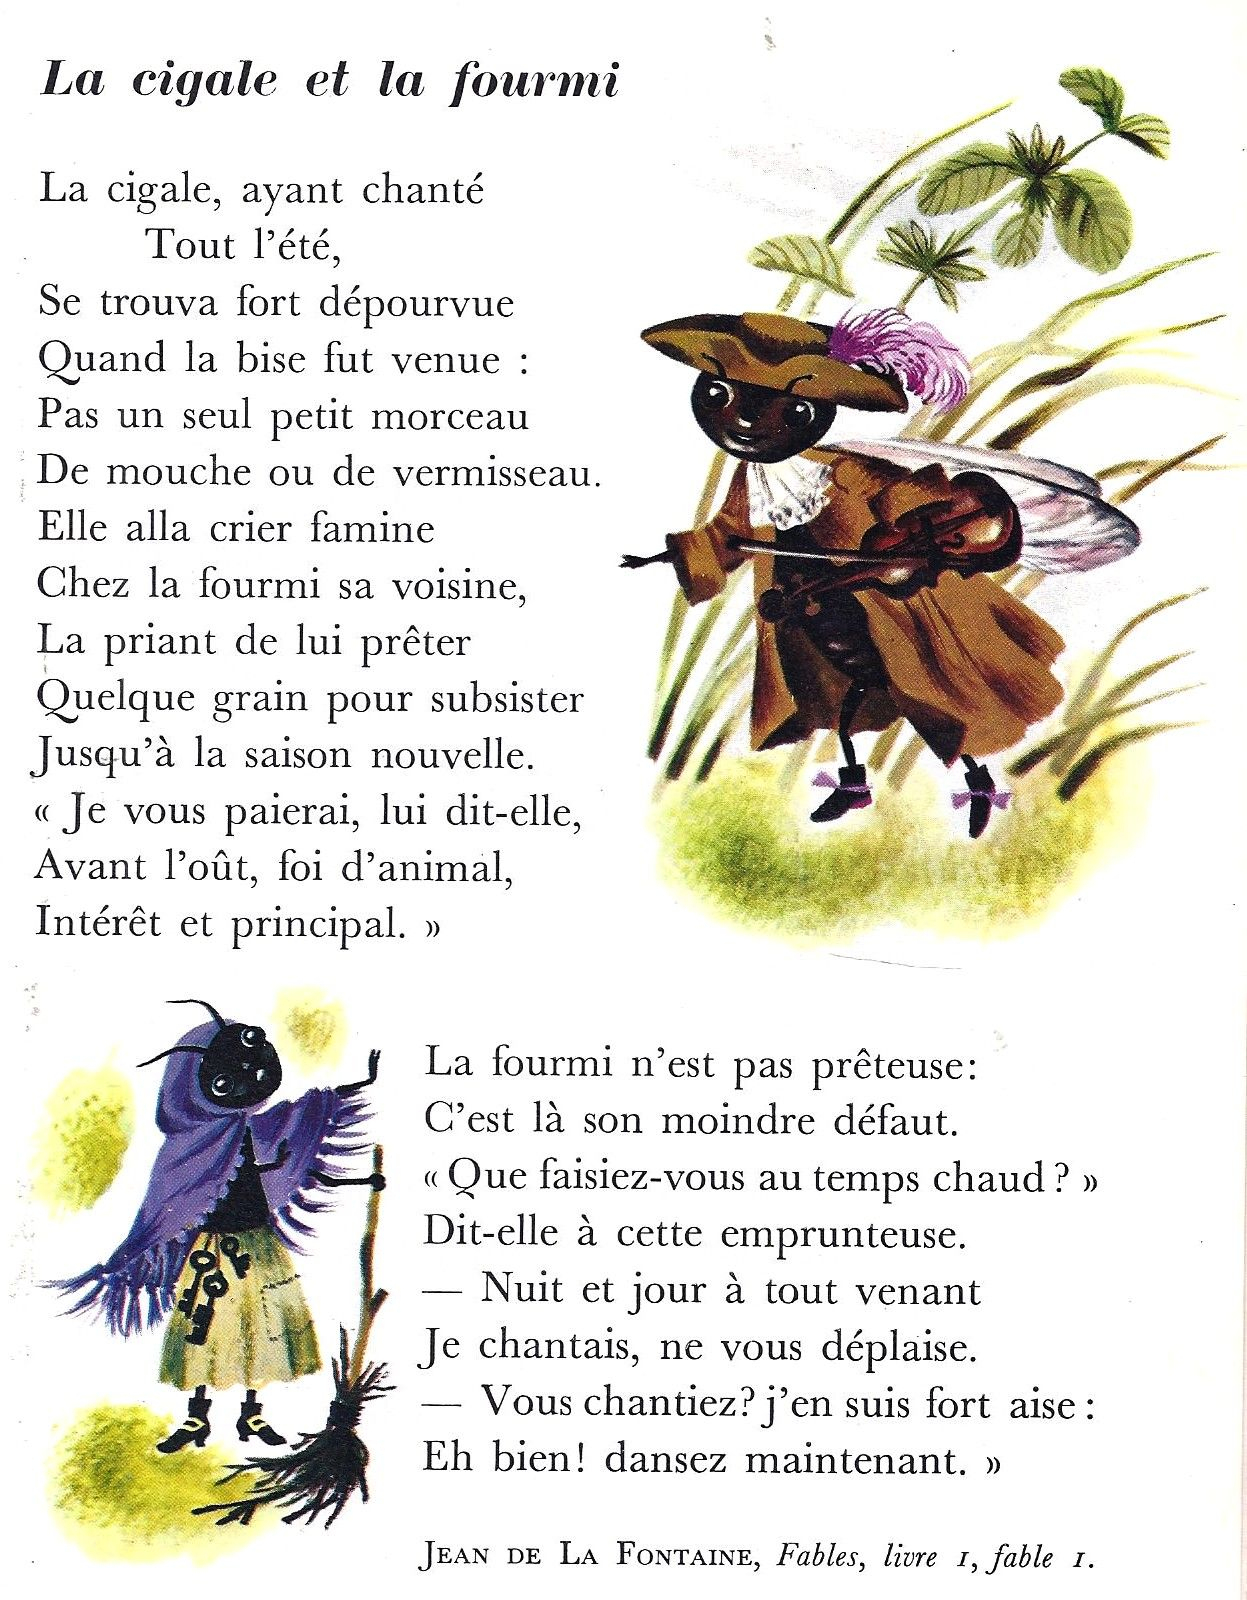 Beau La Cigale Et La Fourmi Image A Colorier - Mademoiselleosaki encequiconcerne Coloriage La Cigale Et La Fourmi